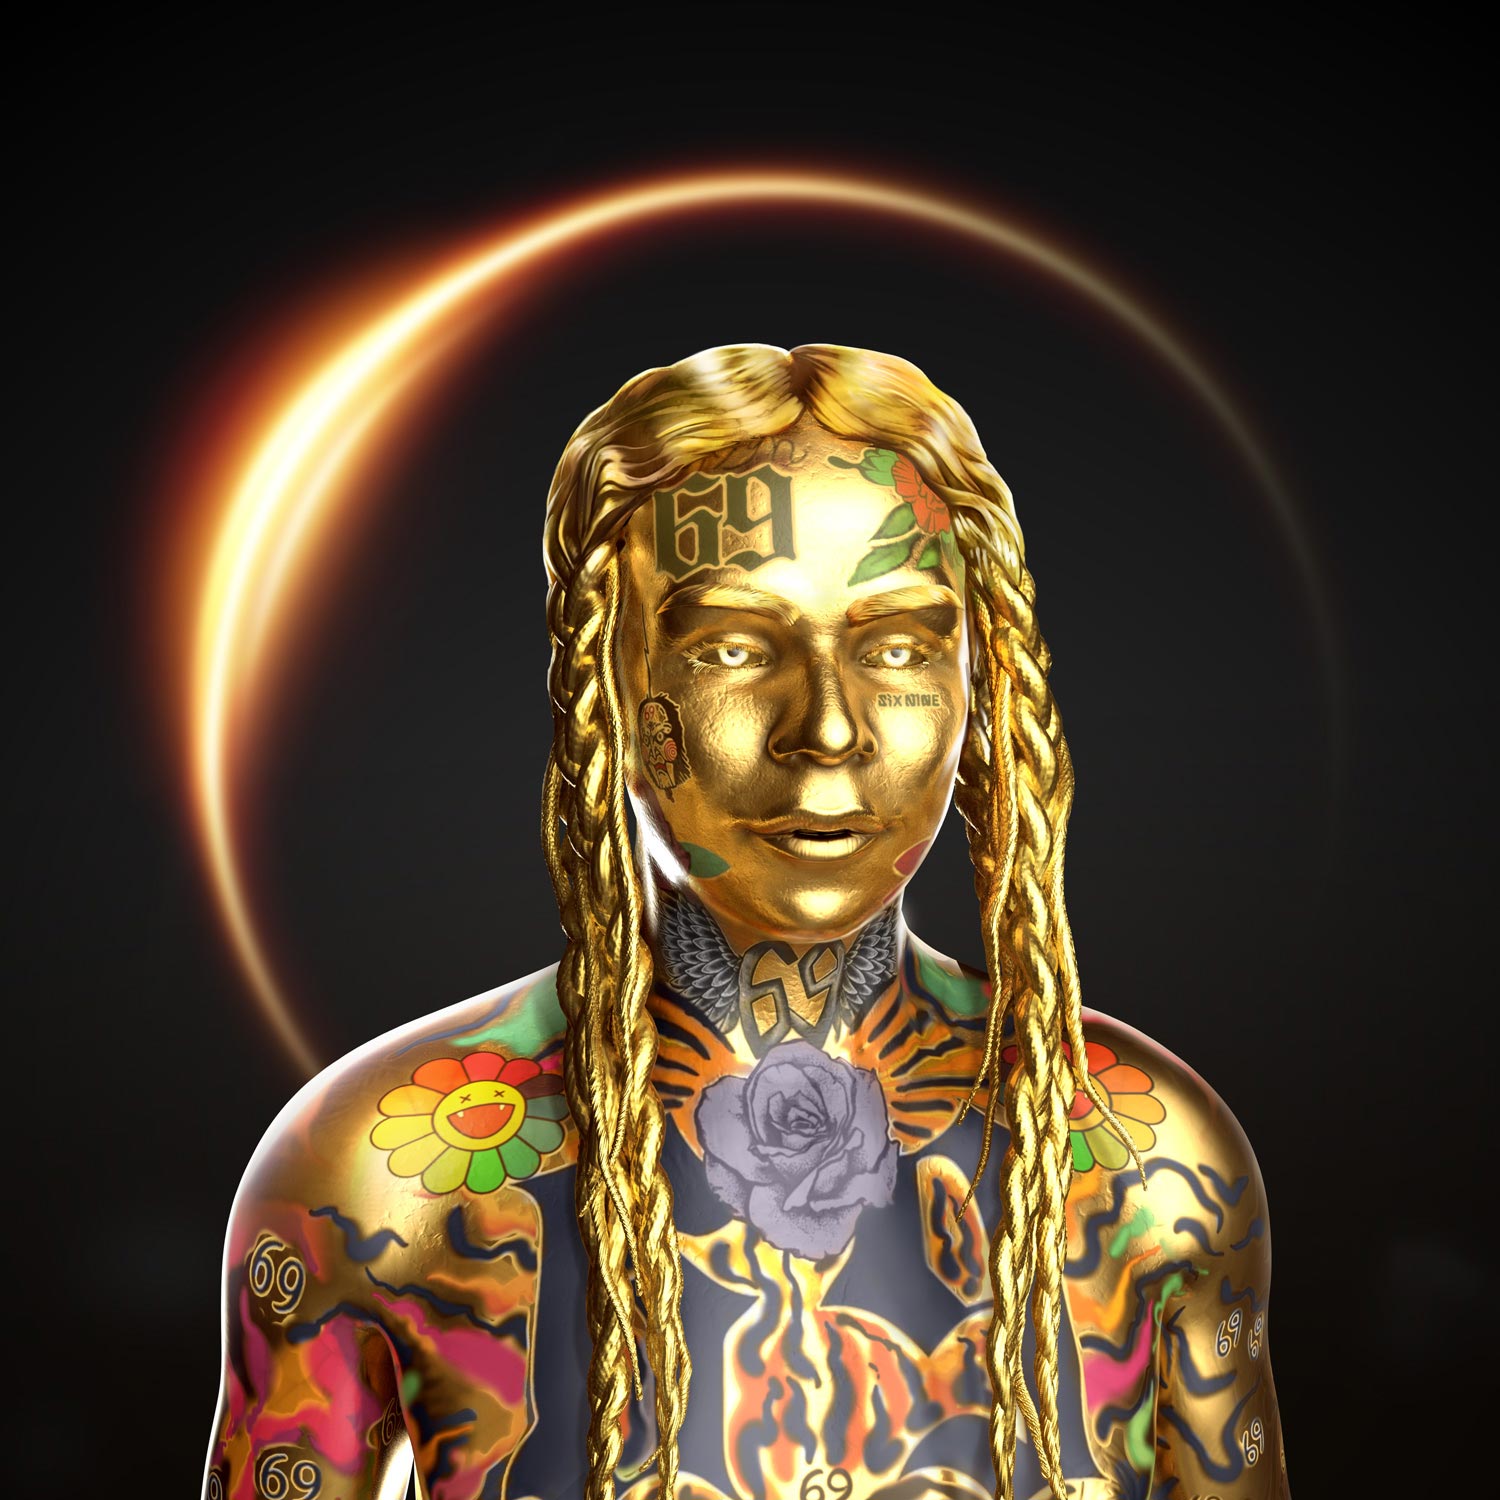 Gold 6ix9ine 3D LegendaryNFT Art